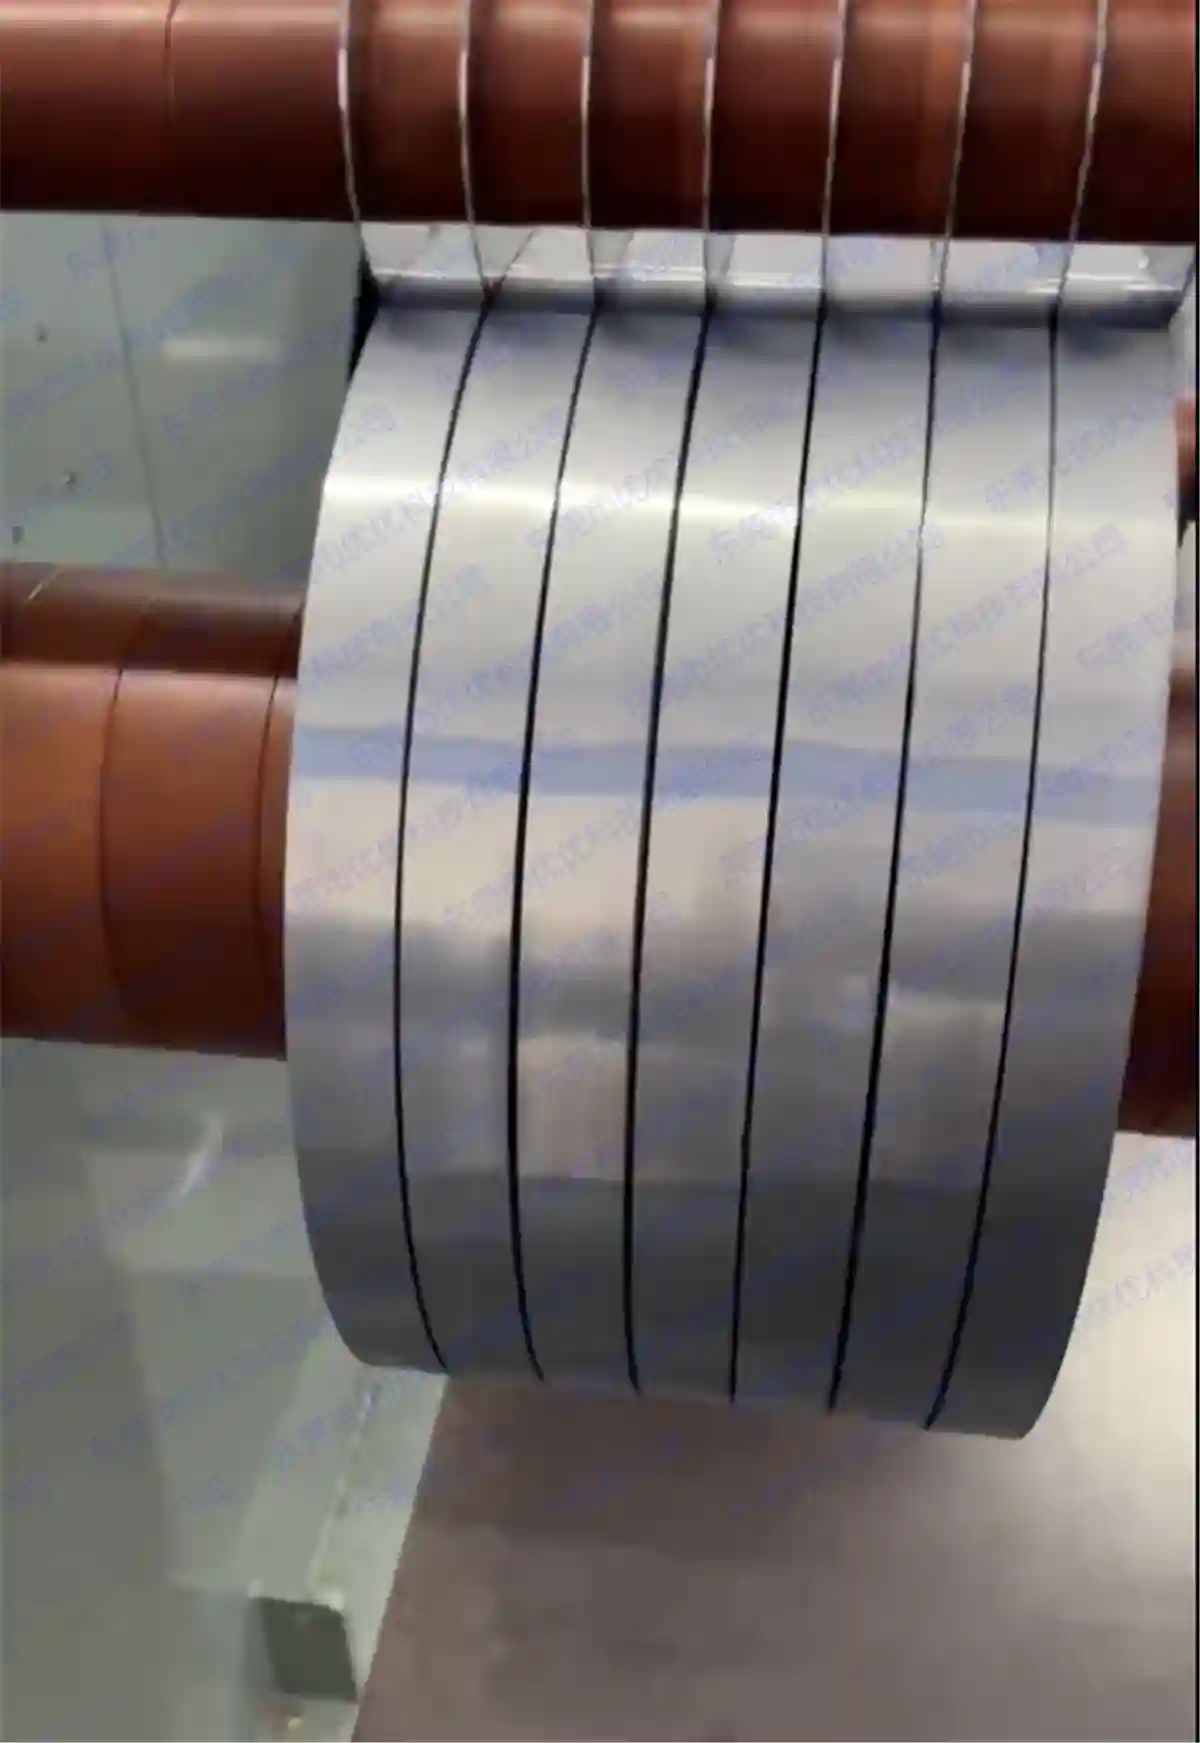 Ultra ince silikon çelik dilme ve dilimleme işlemi (minimum genişlik 5 MM)